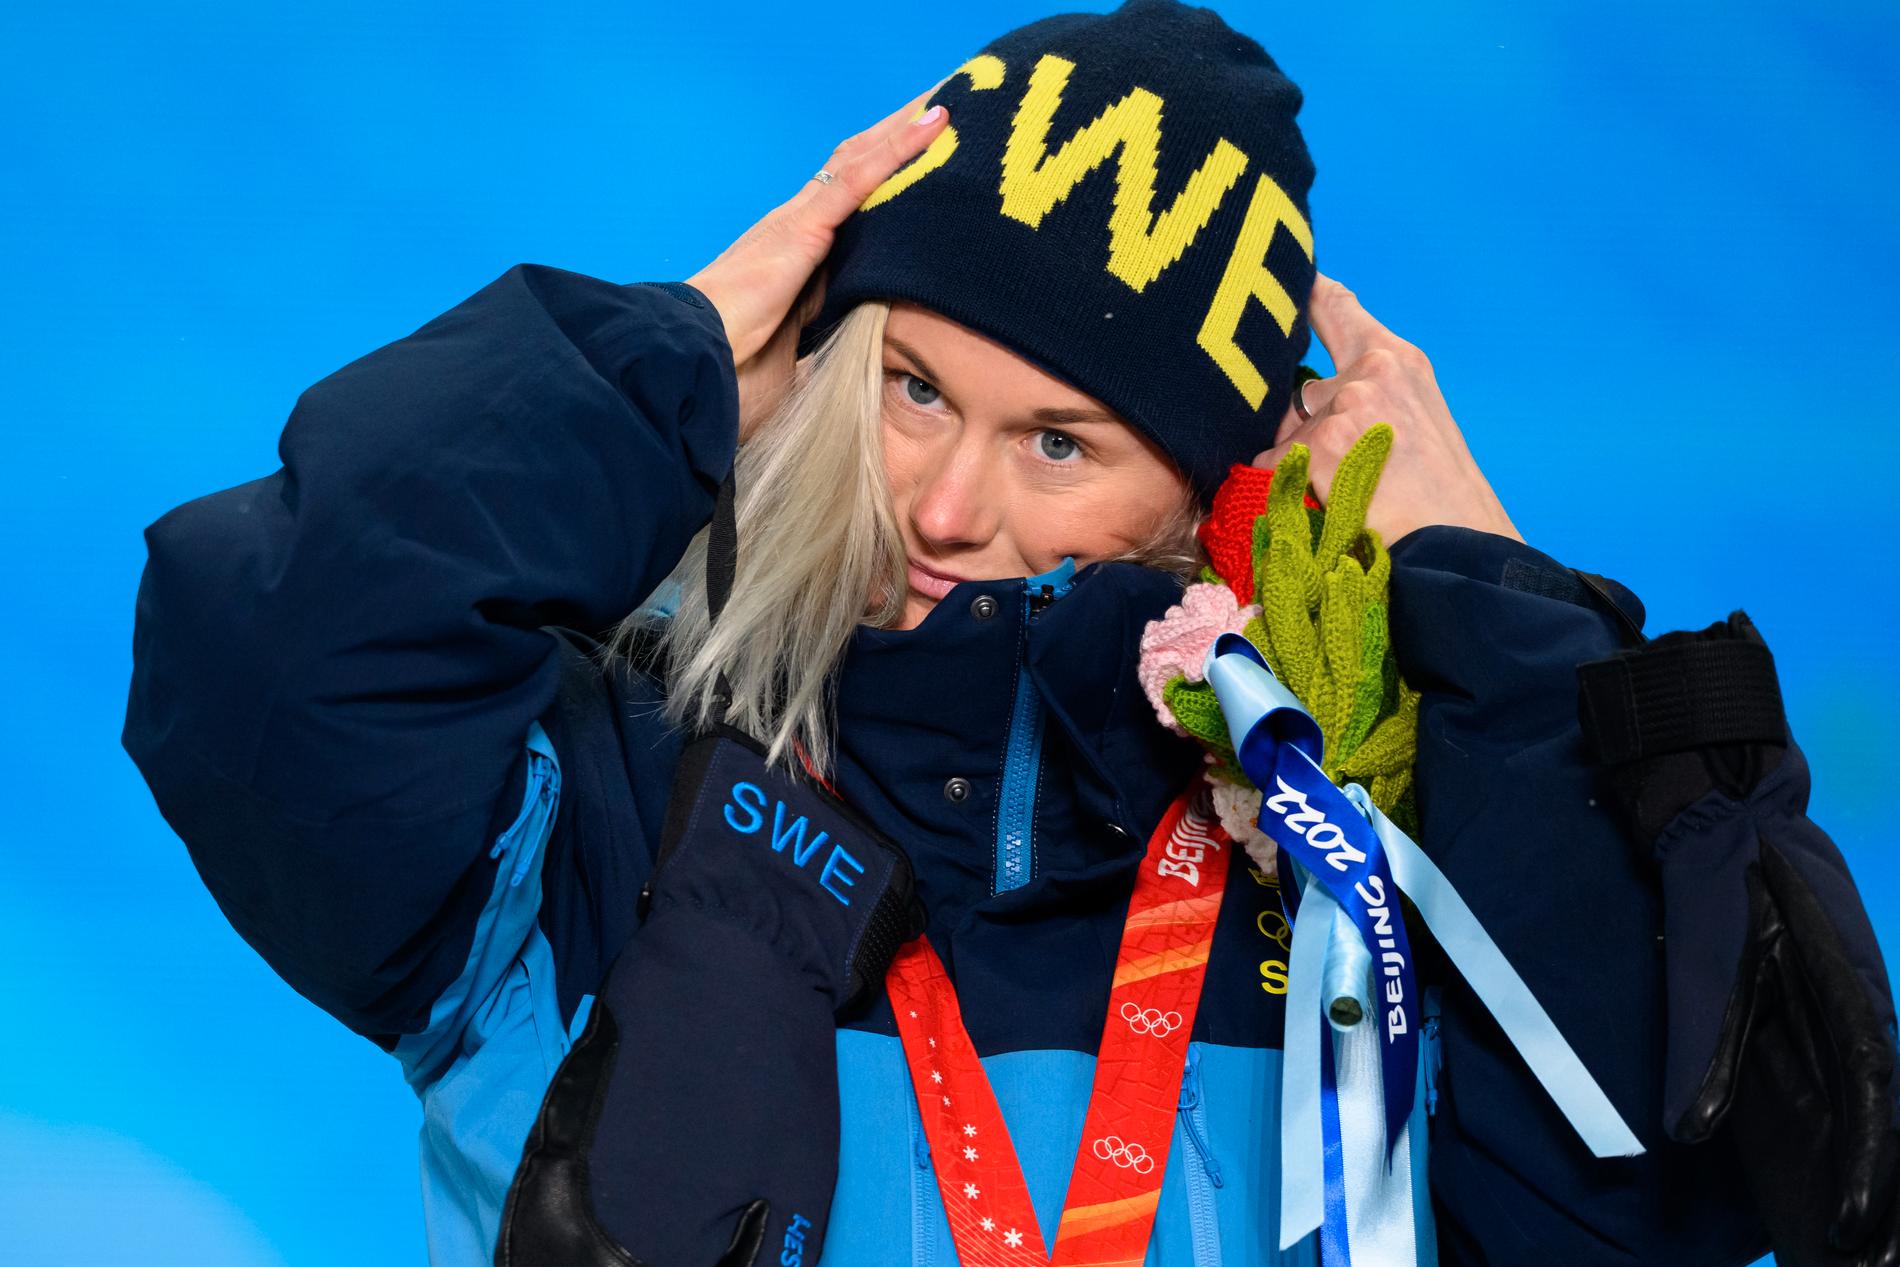 Att ryska åkare inte får representera sitt land är bra, tycker Maja Dahlqvist.